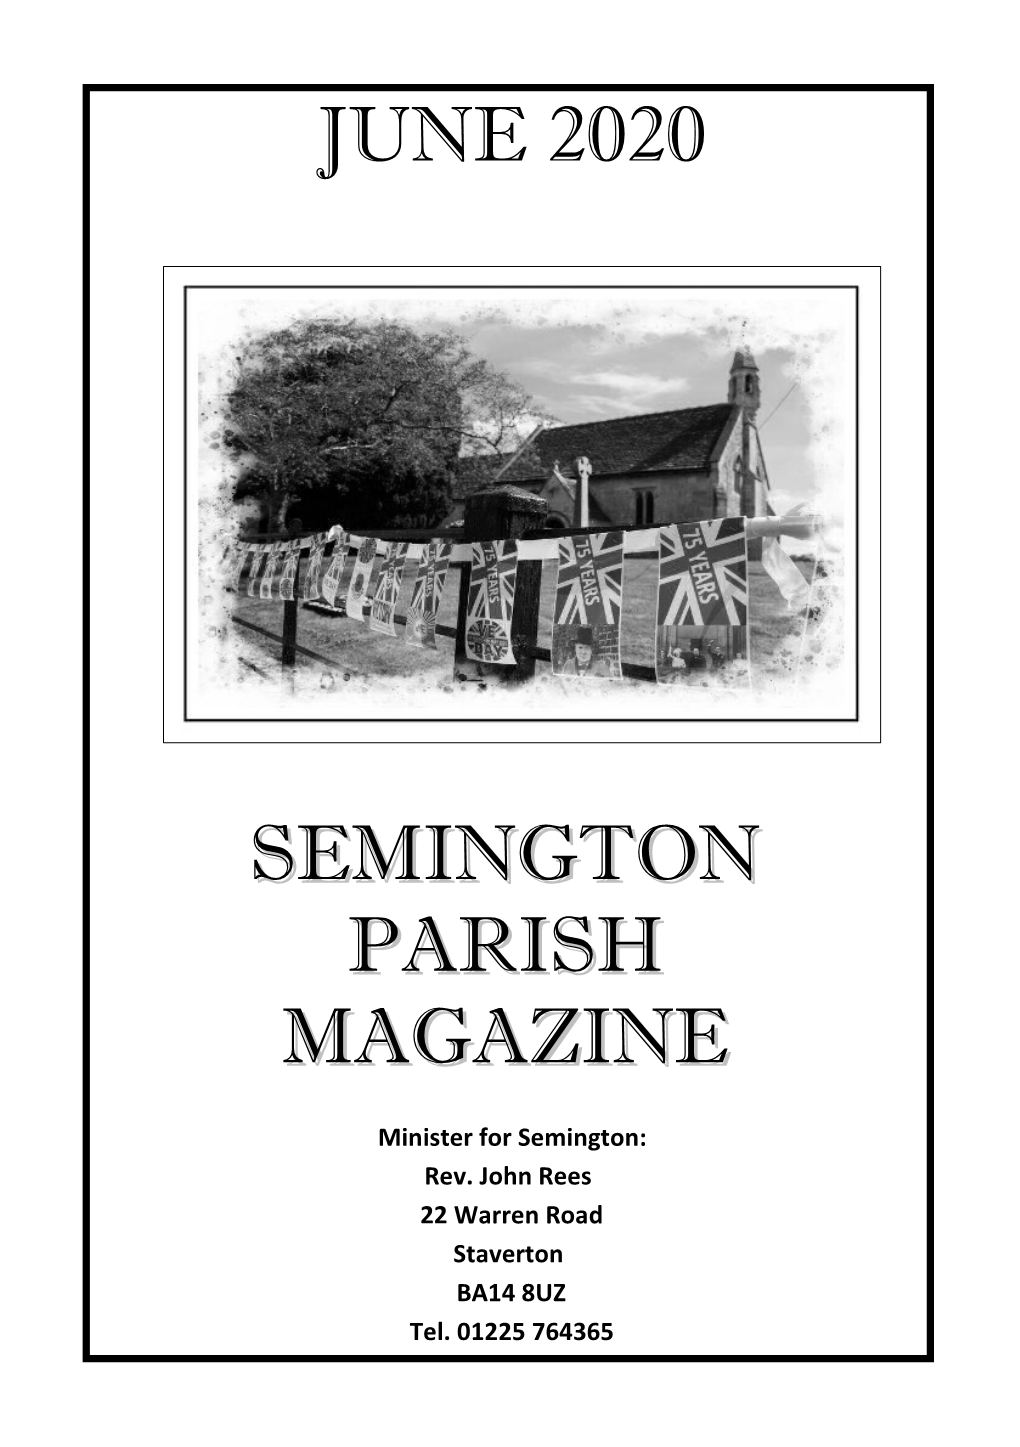 Semington Parish Magazine June 2020